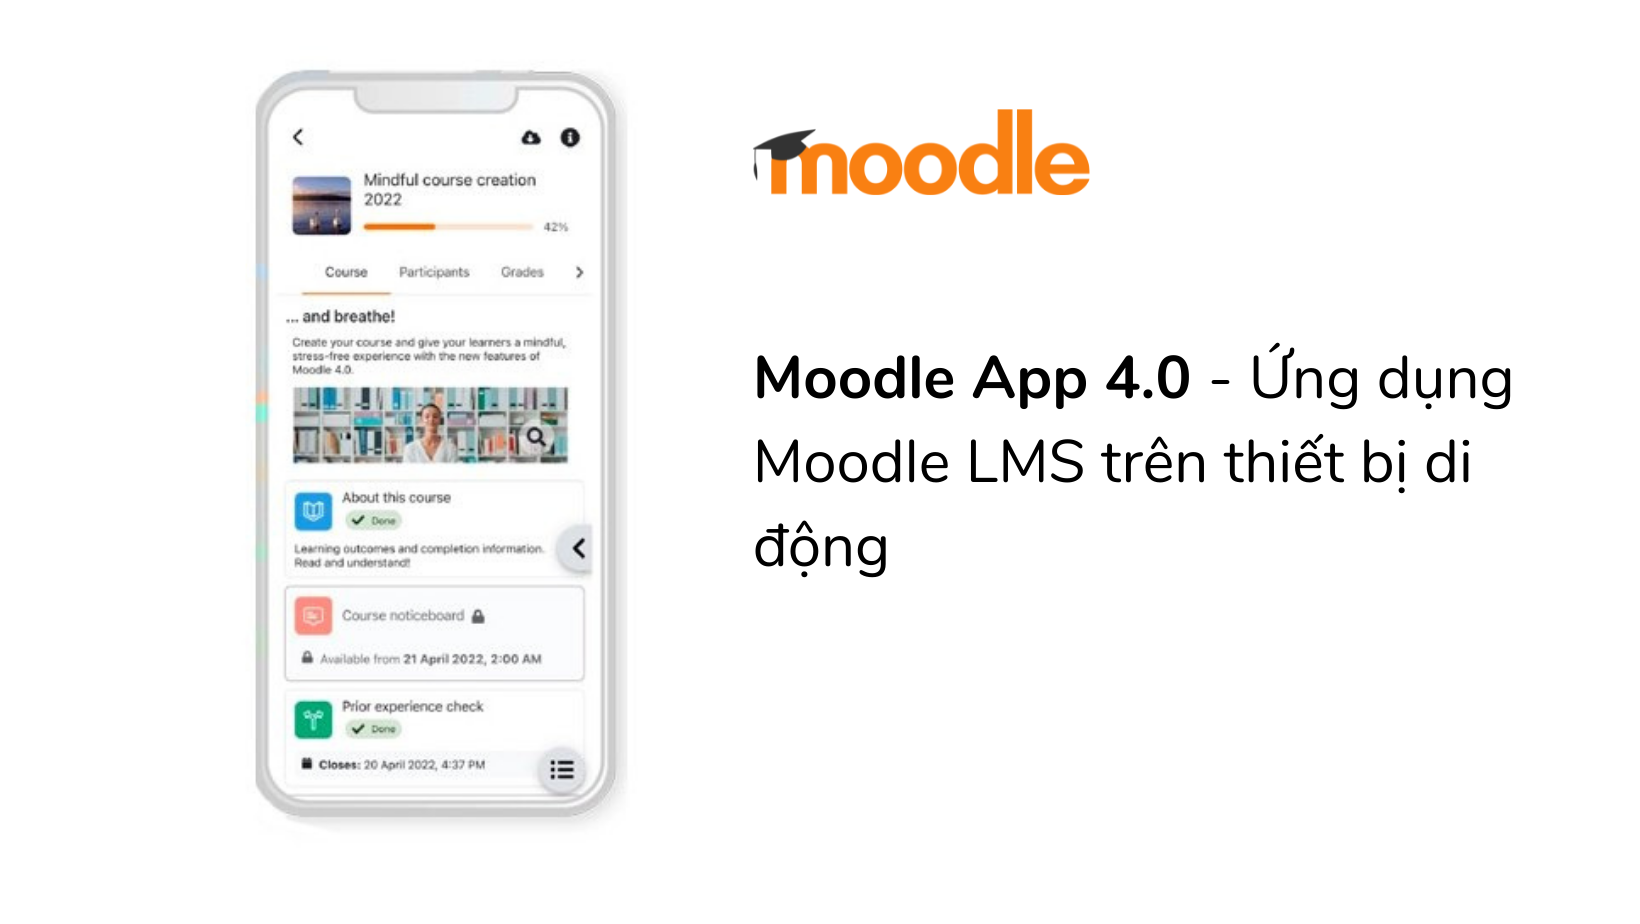 moodle-app-4.0